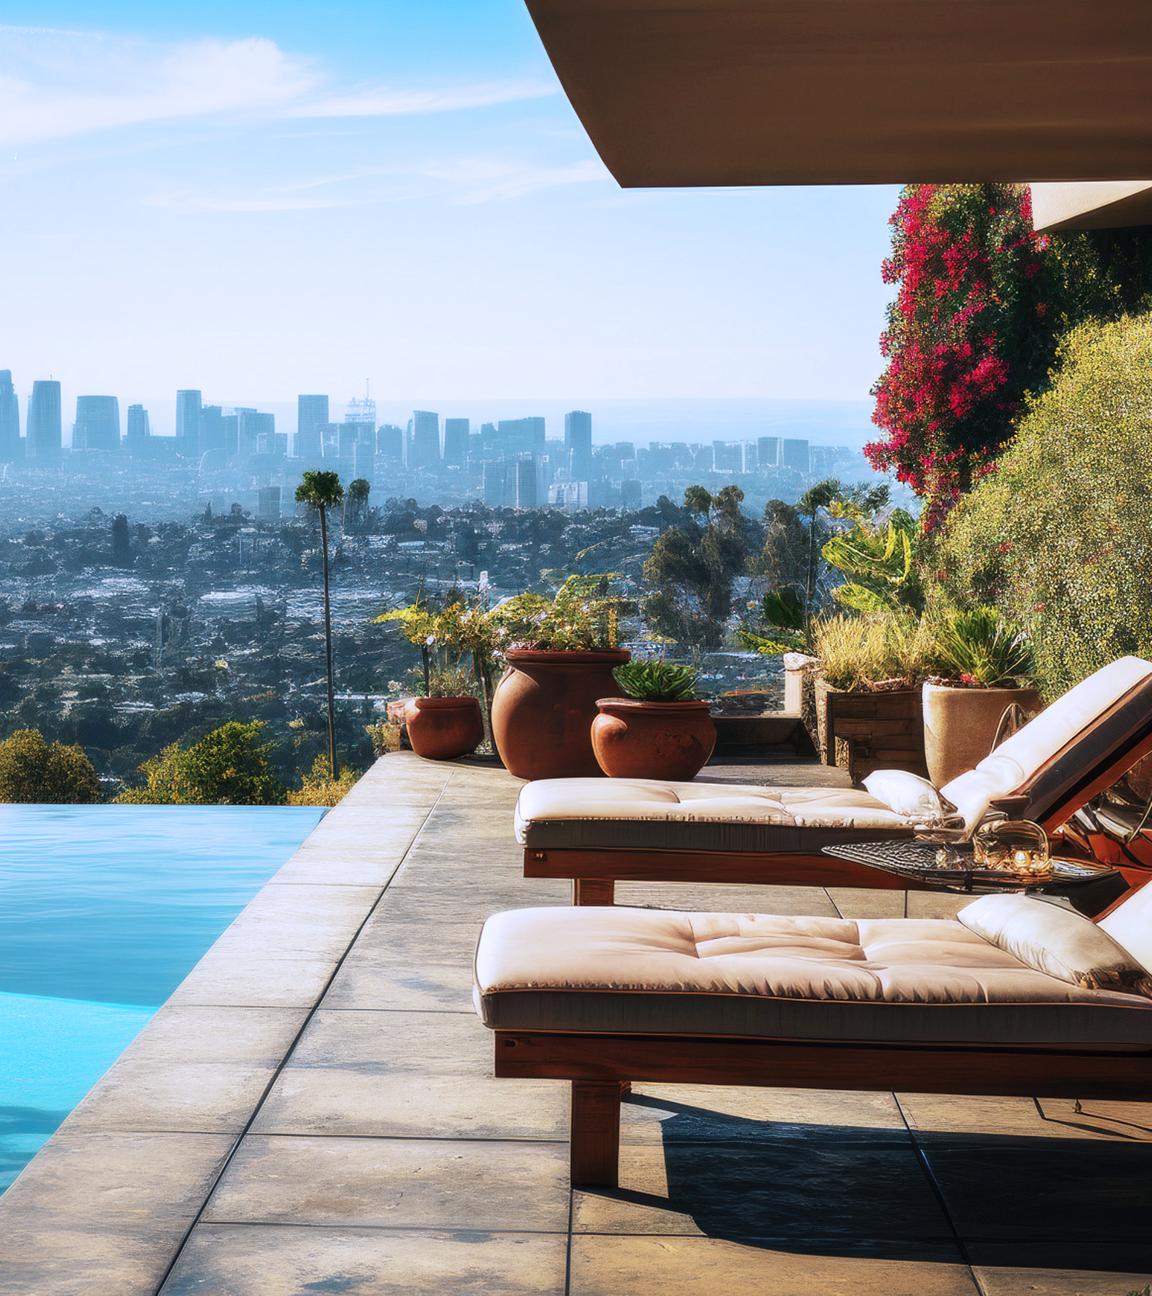 Blick von einer Terrasse mit Pool auf die Skyline von Los Angelos.